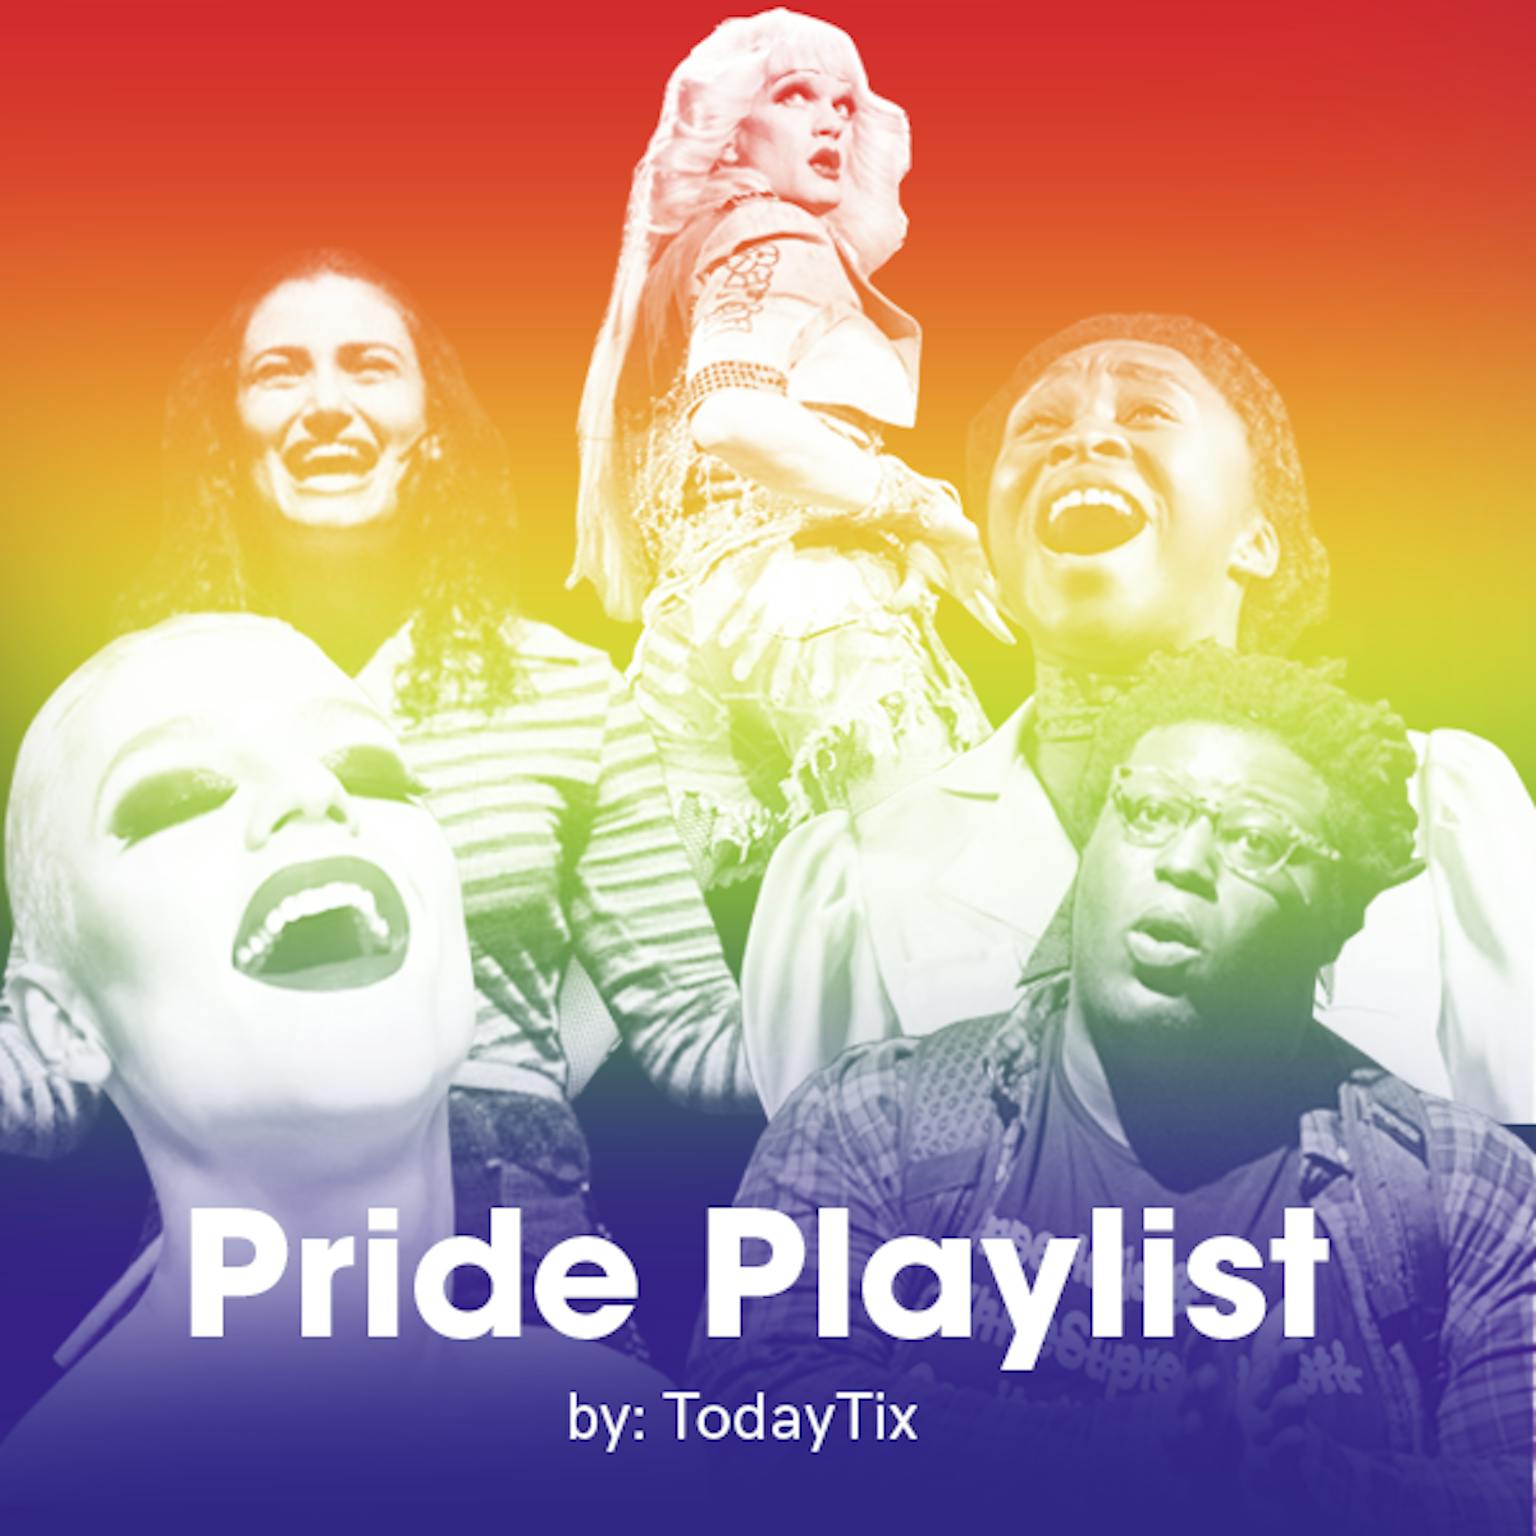 Listen to Our Pride Playlist! TodayTix Insider